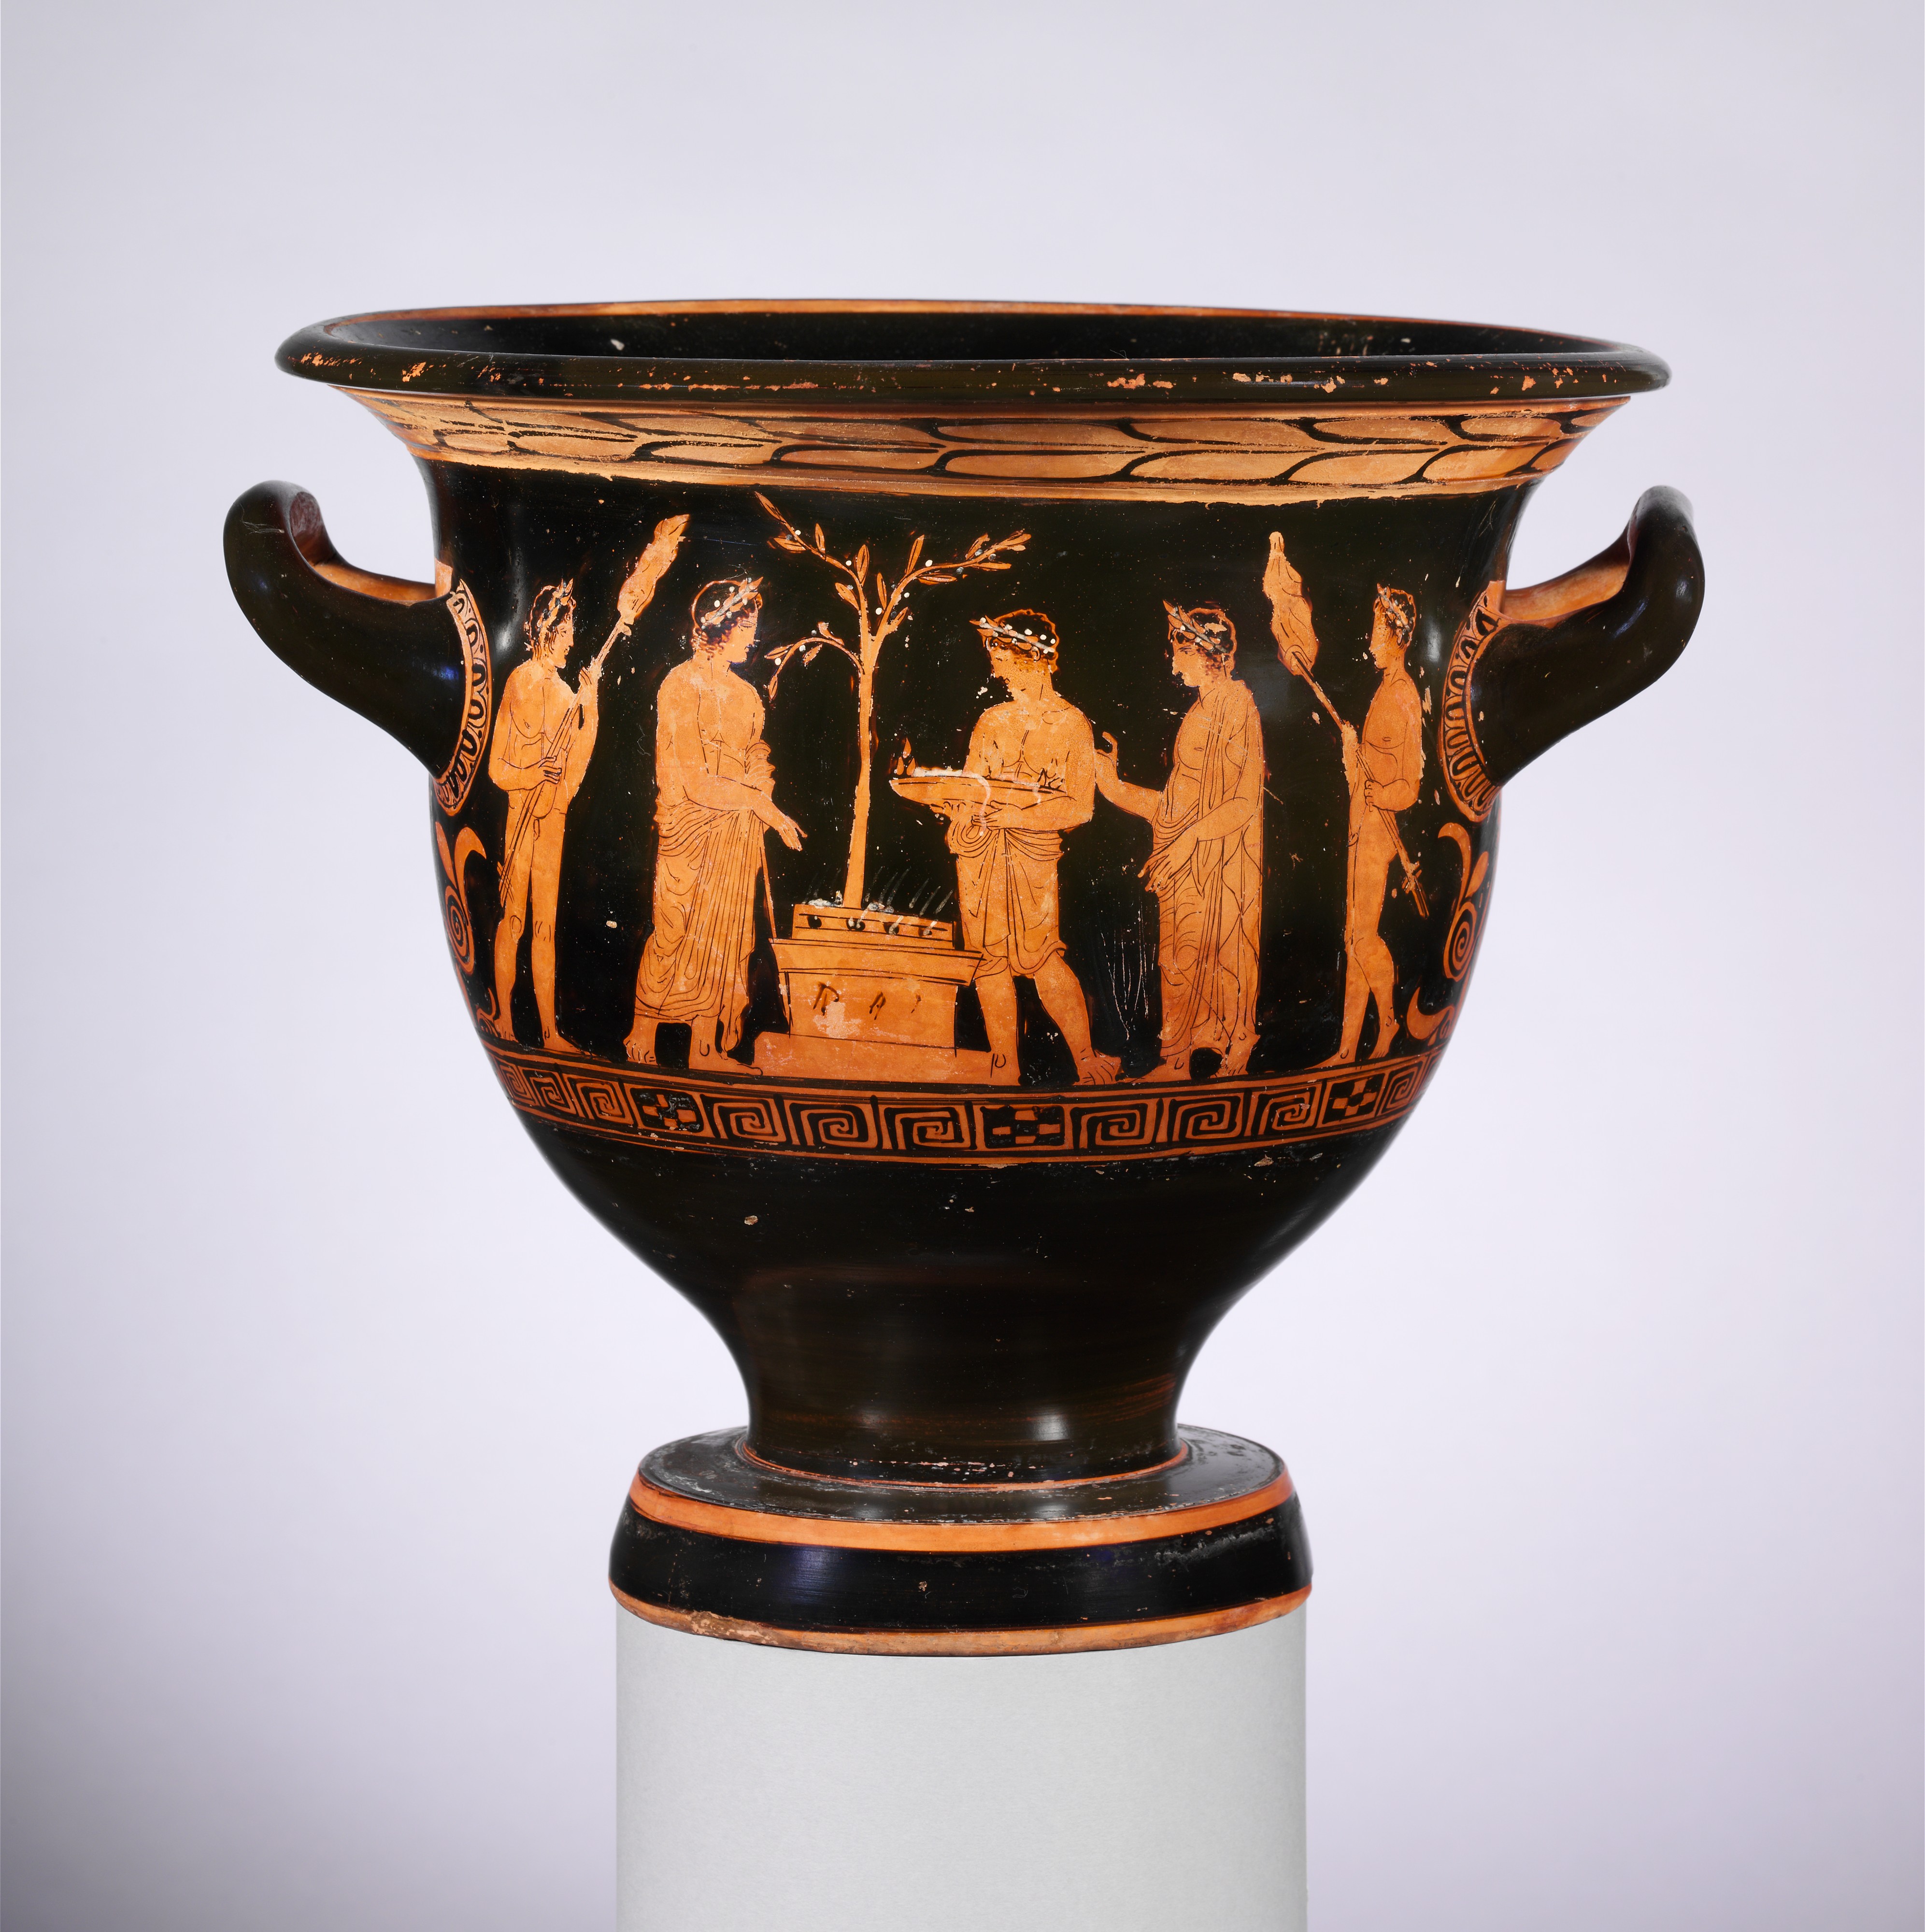 Cratère (vase) peint où l'on peut voir une offrande faite à Apollon